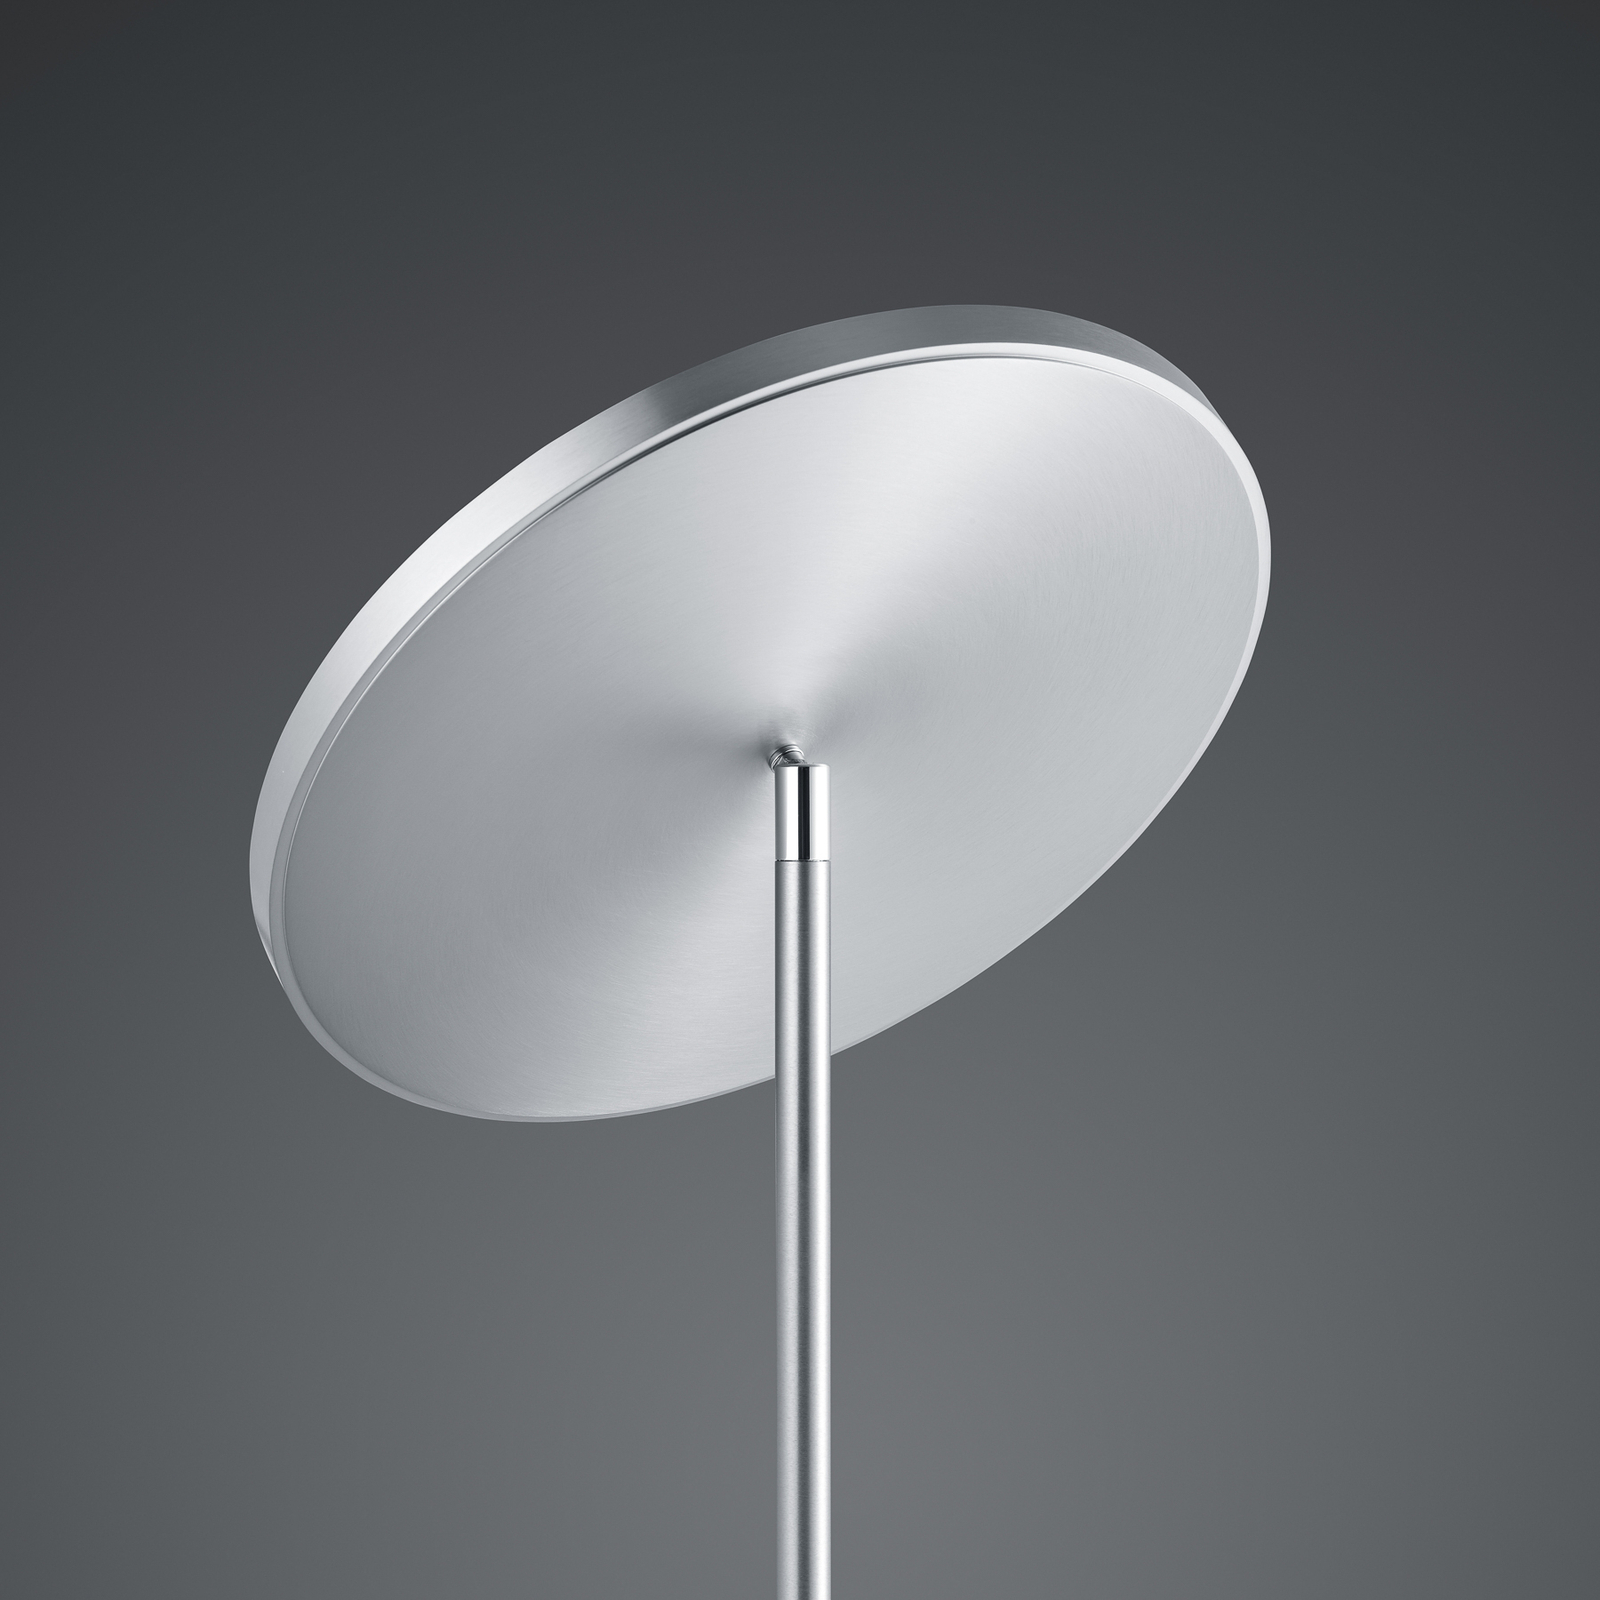 BANKAMP Solid LED floor lamp dimmer nickel/chrome